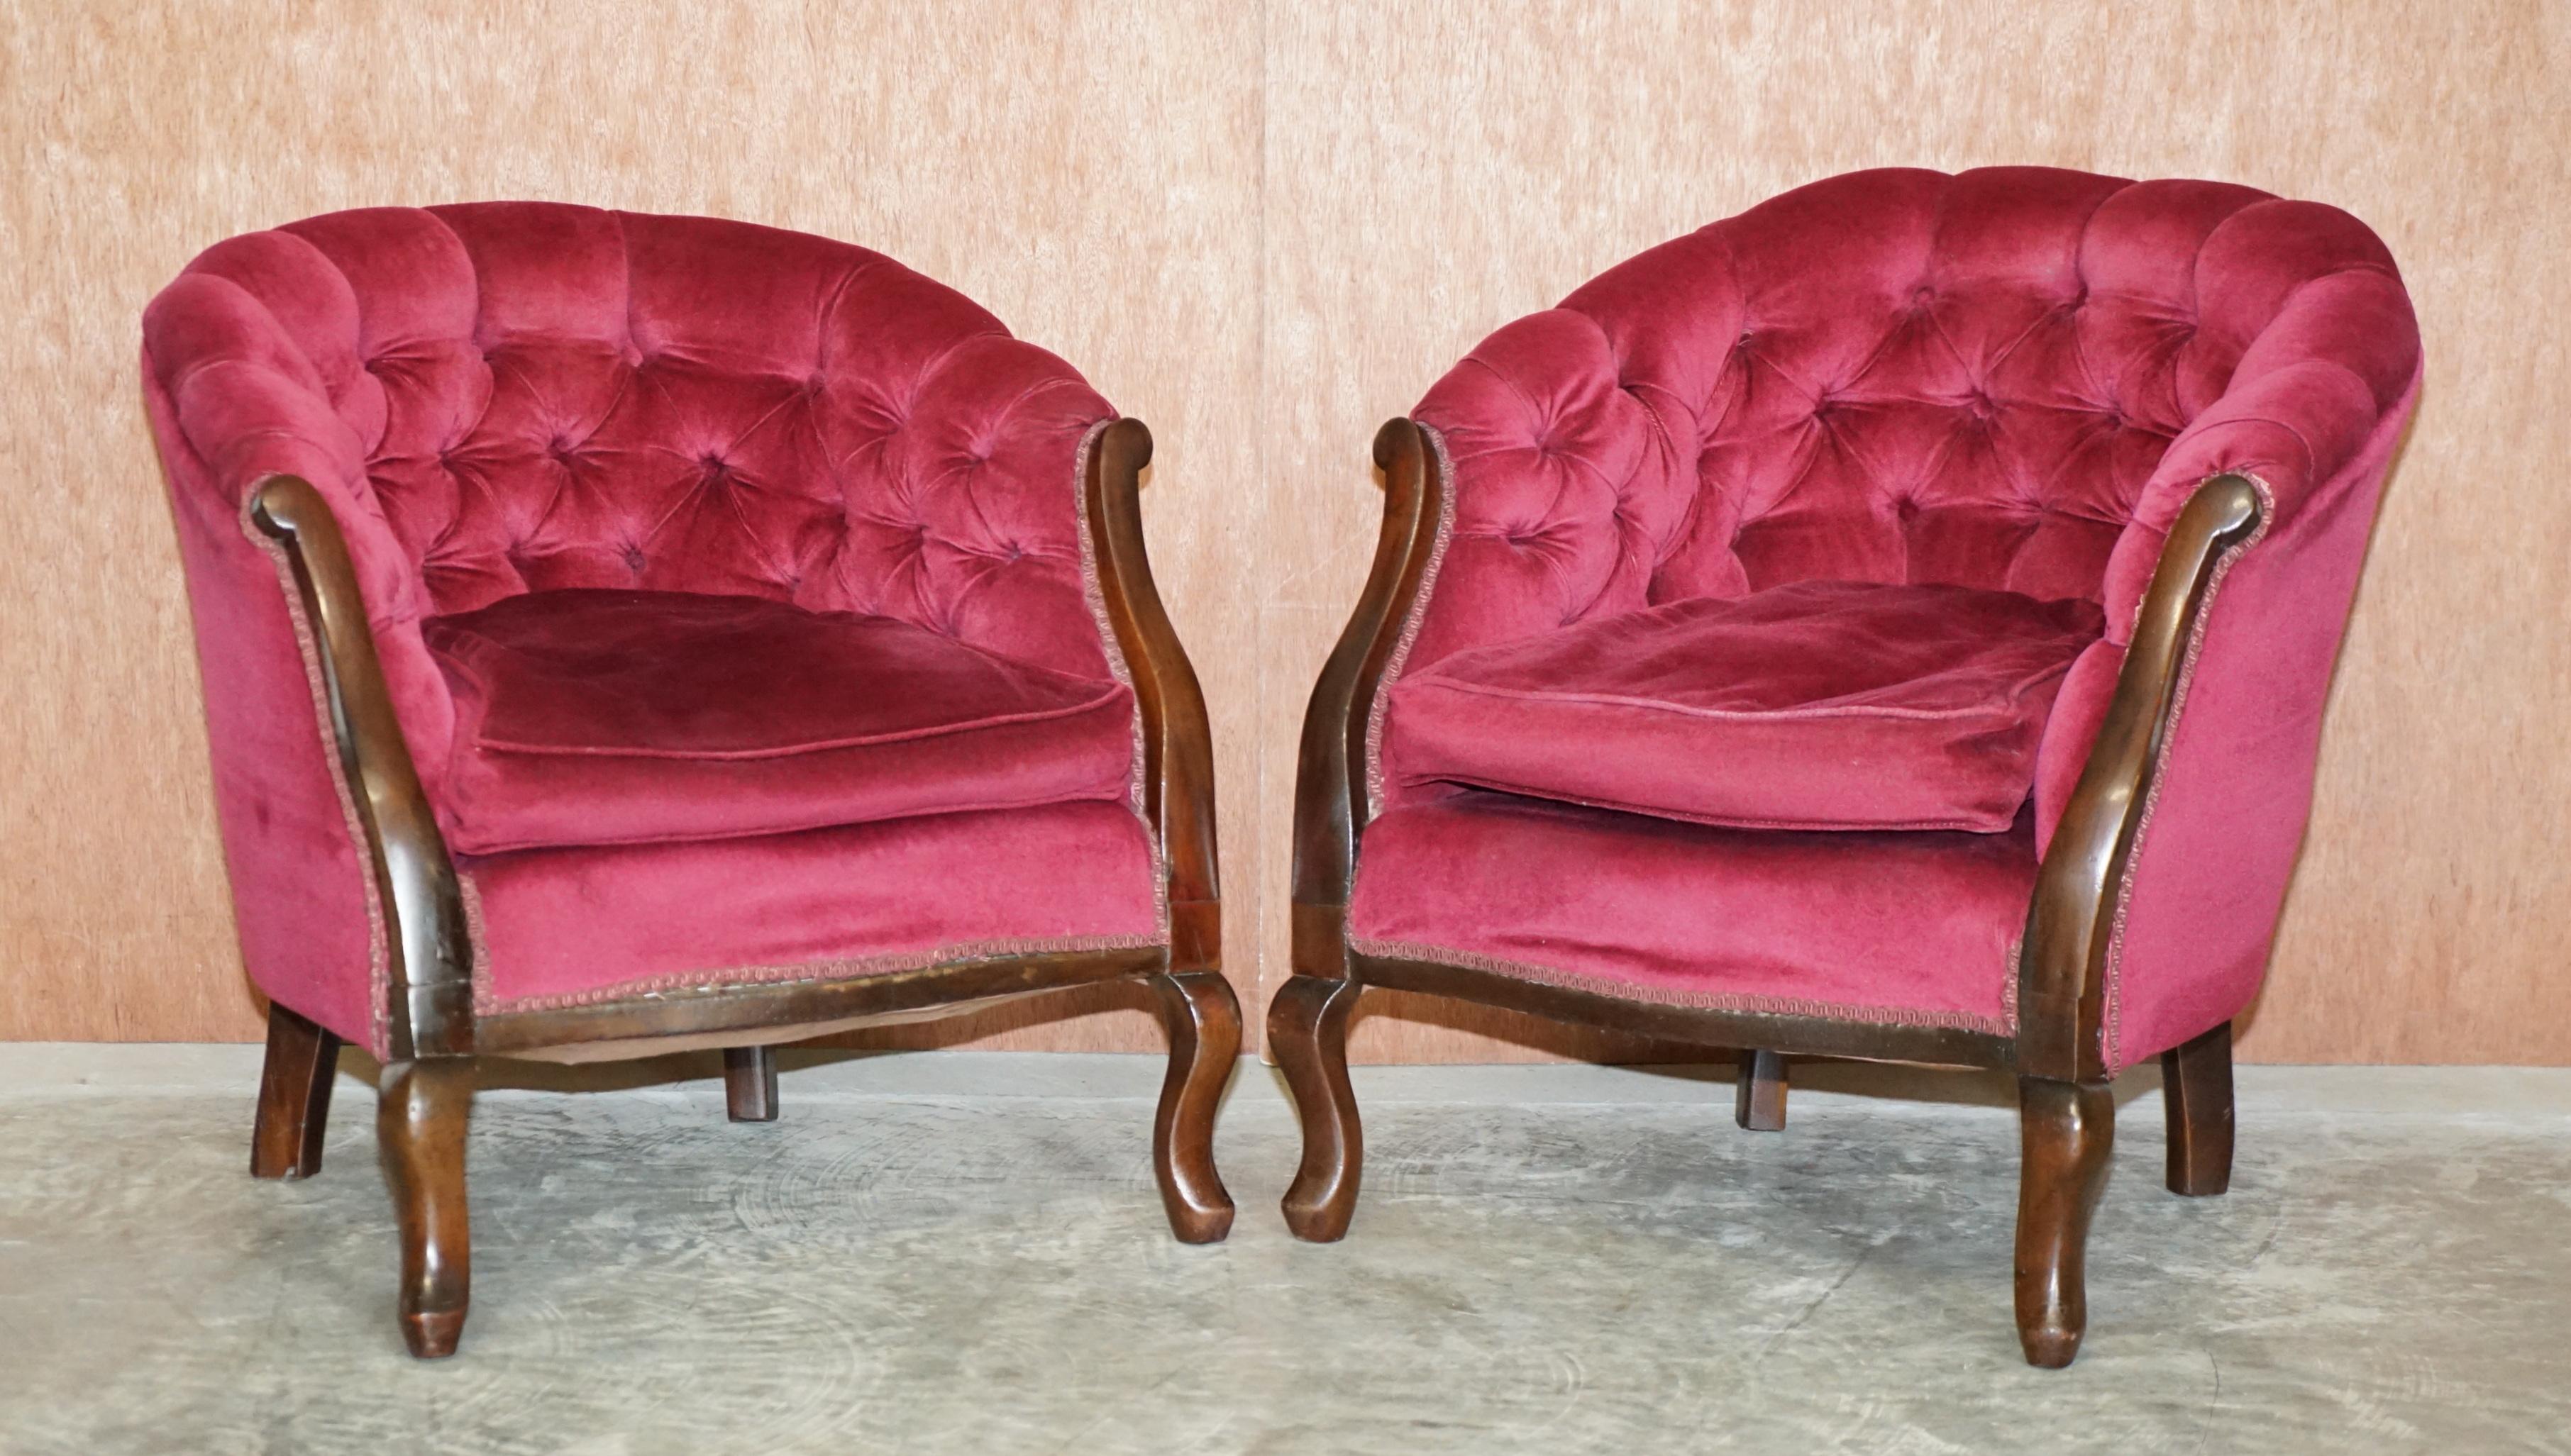 Wir freuen uns, diese schöne viktorianische Chesterfield getuftet rosa Velours und Mahagoni Wohnzimmer Sitzgarnitur zum Verkauf anbieten 

Eine sehr elegante und gut gemachte Garnitur, die Rahmen sind aus Mahagoni und die Polsterung aus rosa